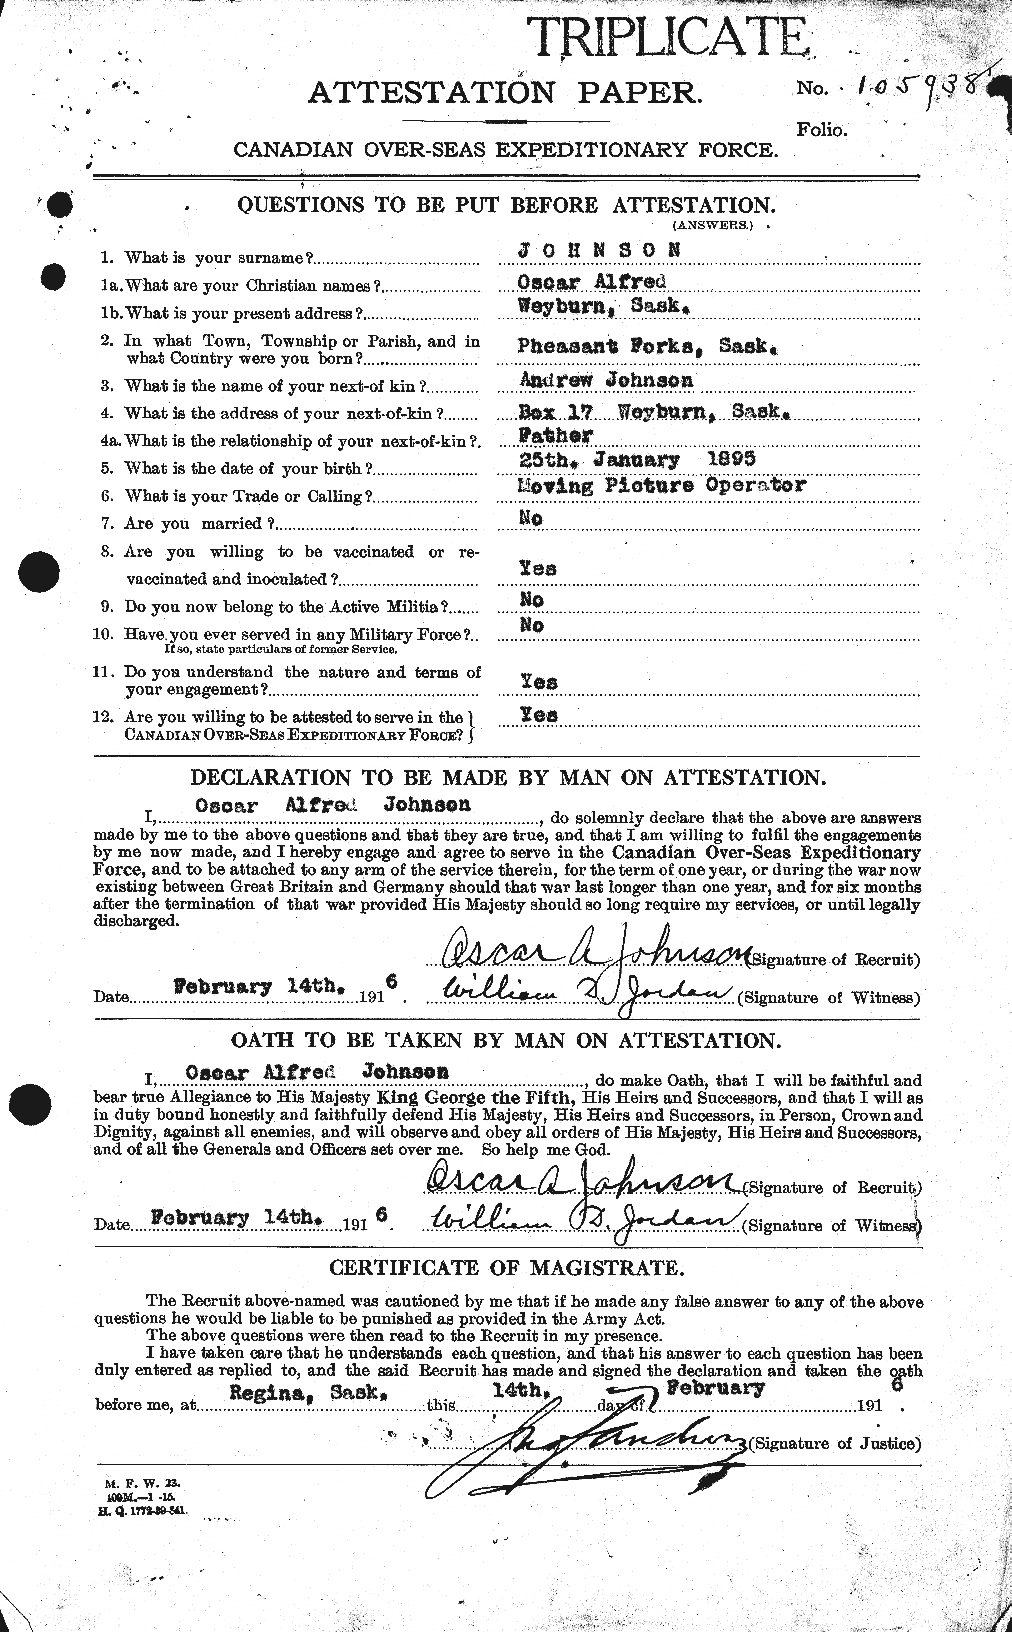 Dossiers du Personnel de la Première Guerre mondiale - CEC 417233a